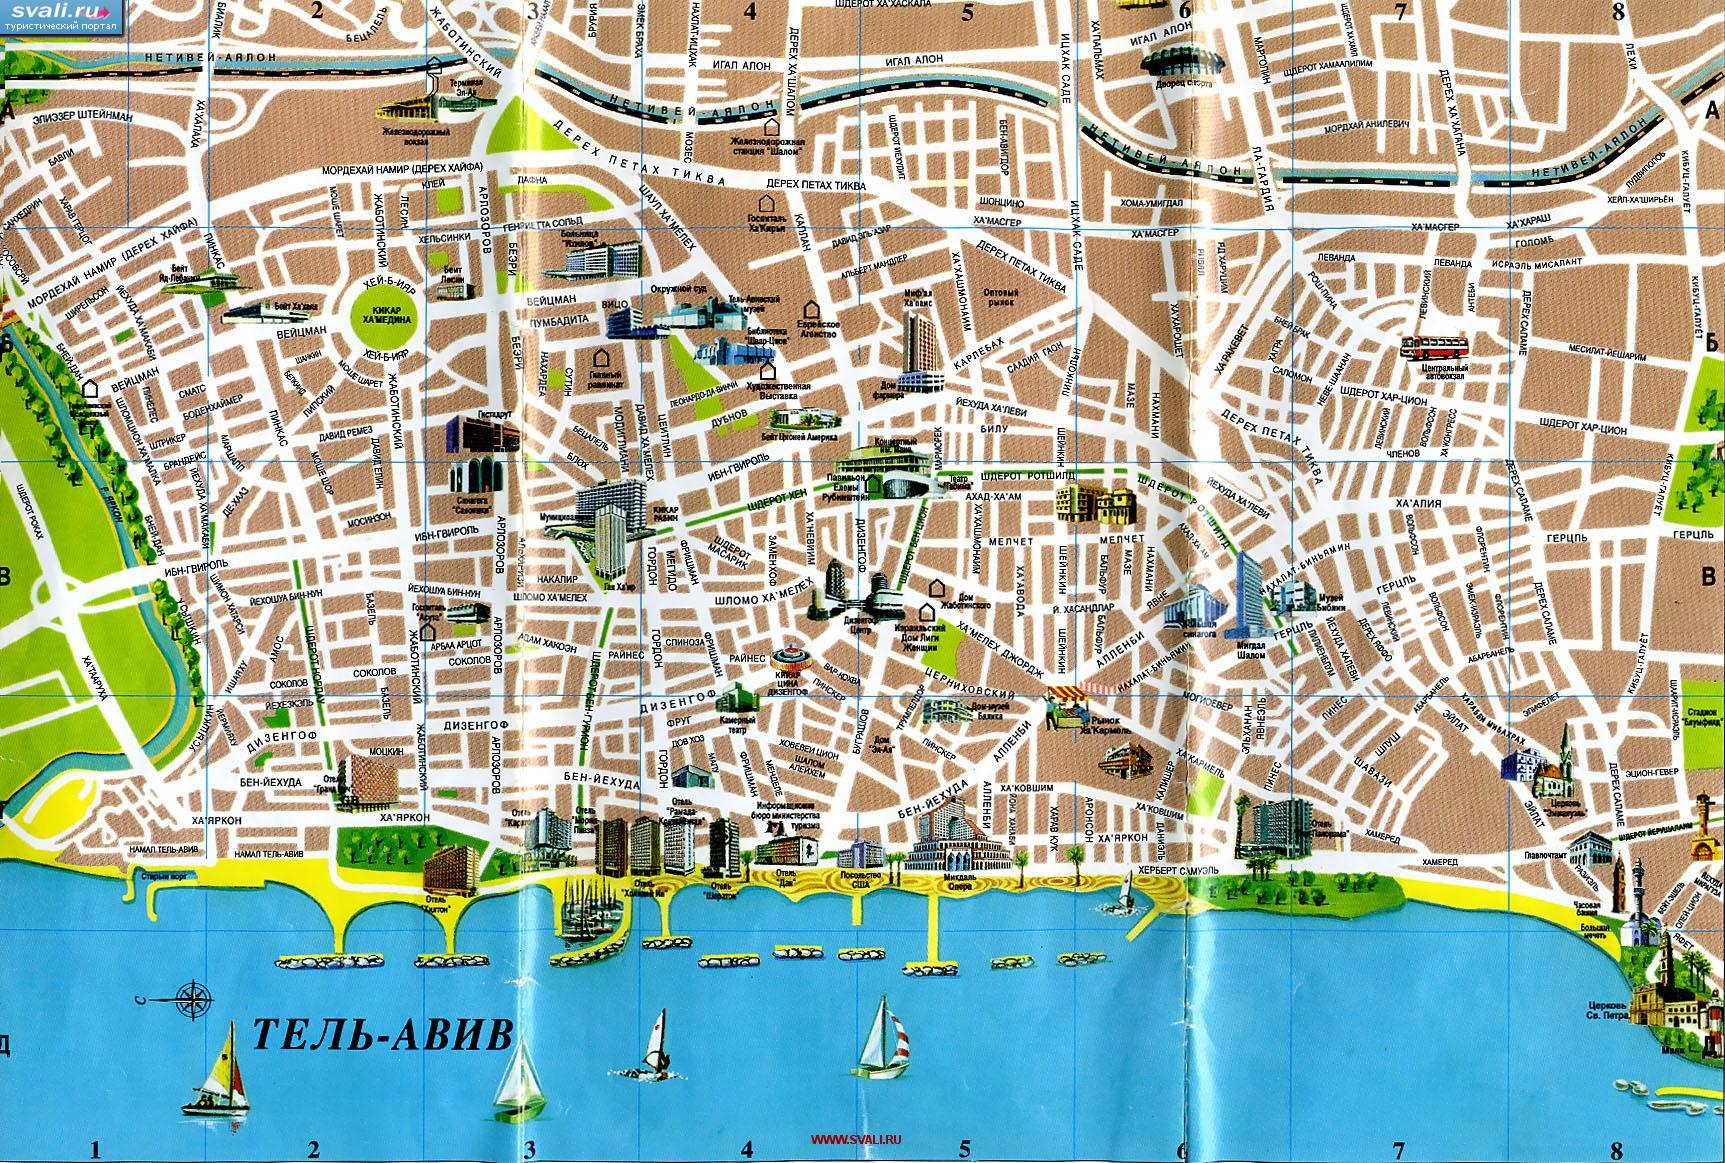 Подробная туристическая карта центра Тель-Авива на русском языка с указанием достопримечательностей, Израиль.